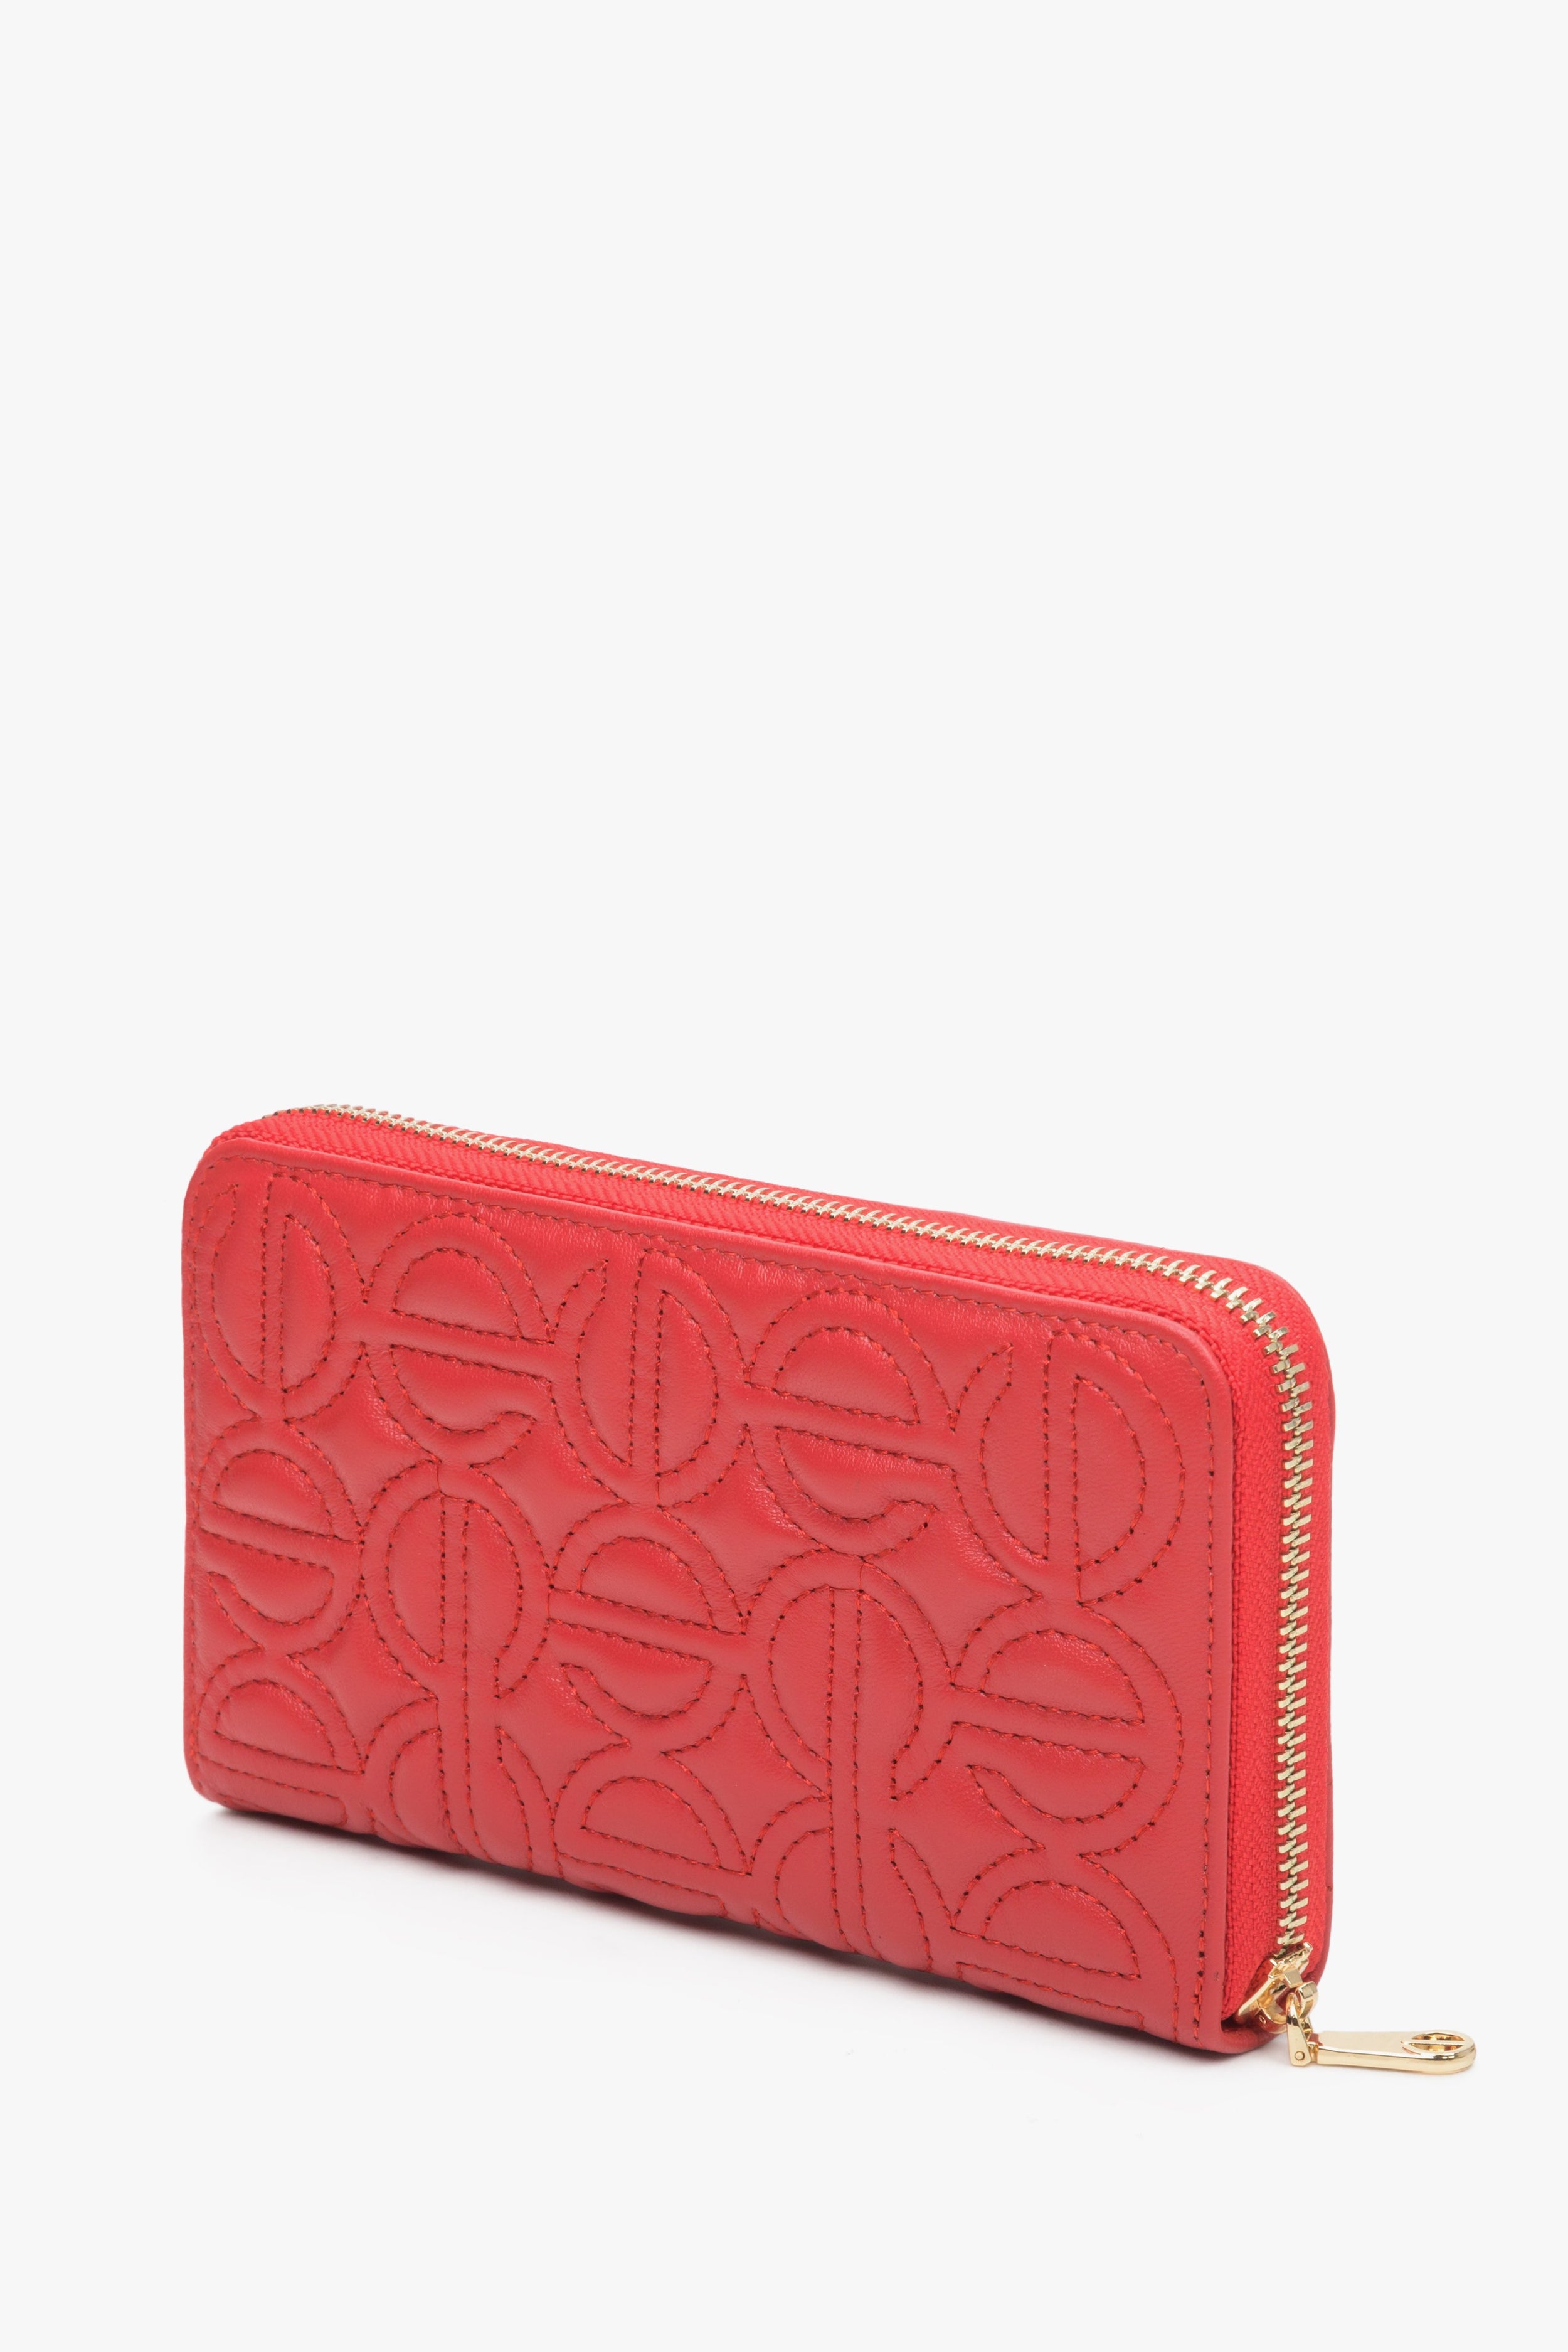 Estro: Duży czerwony portfel damski zasuwany ze skóry naturalnej